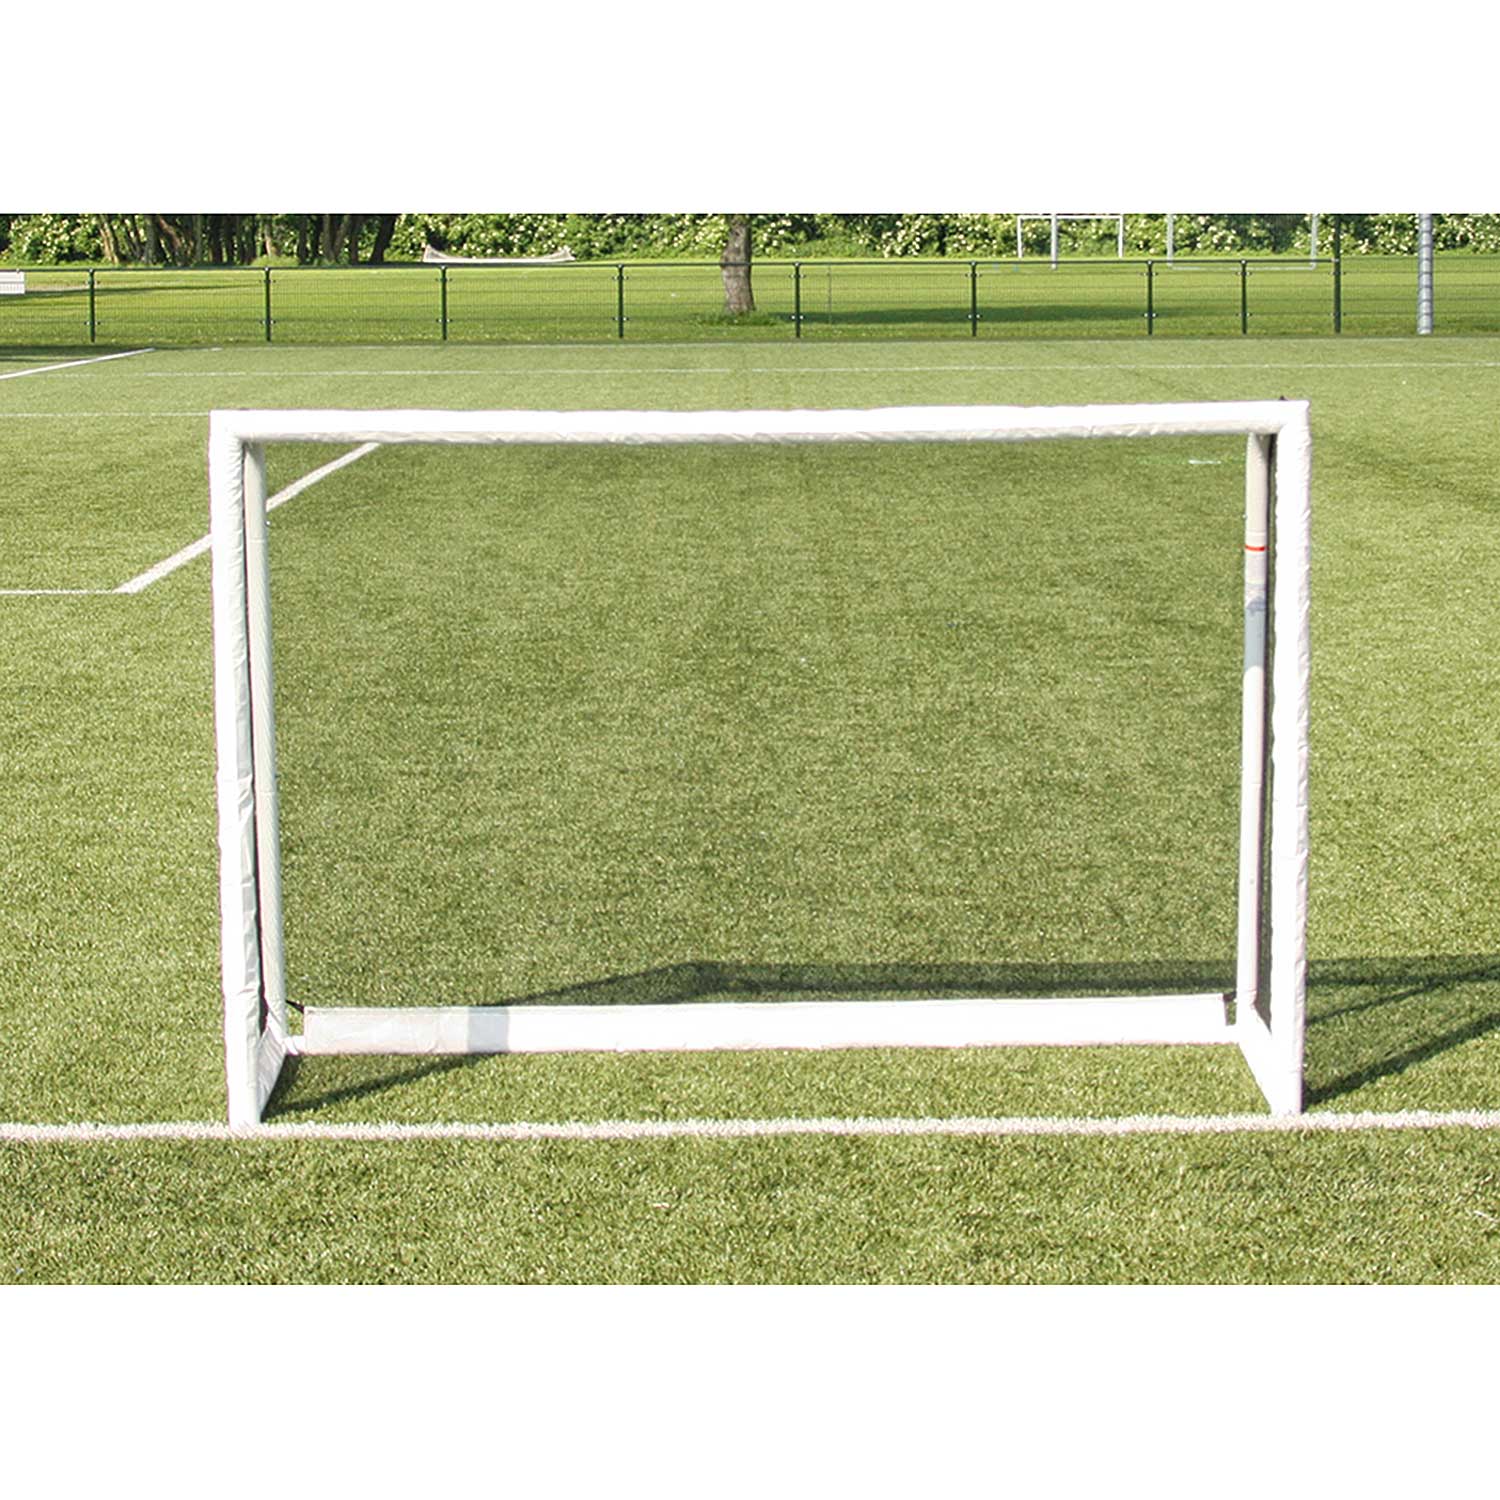 Soccer goal Buffalo Champ Cup (185x125x70cm)